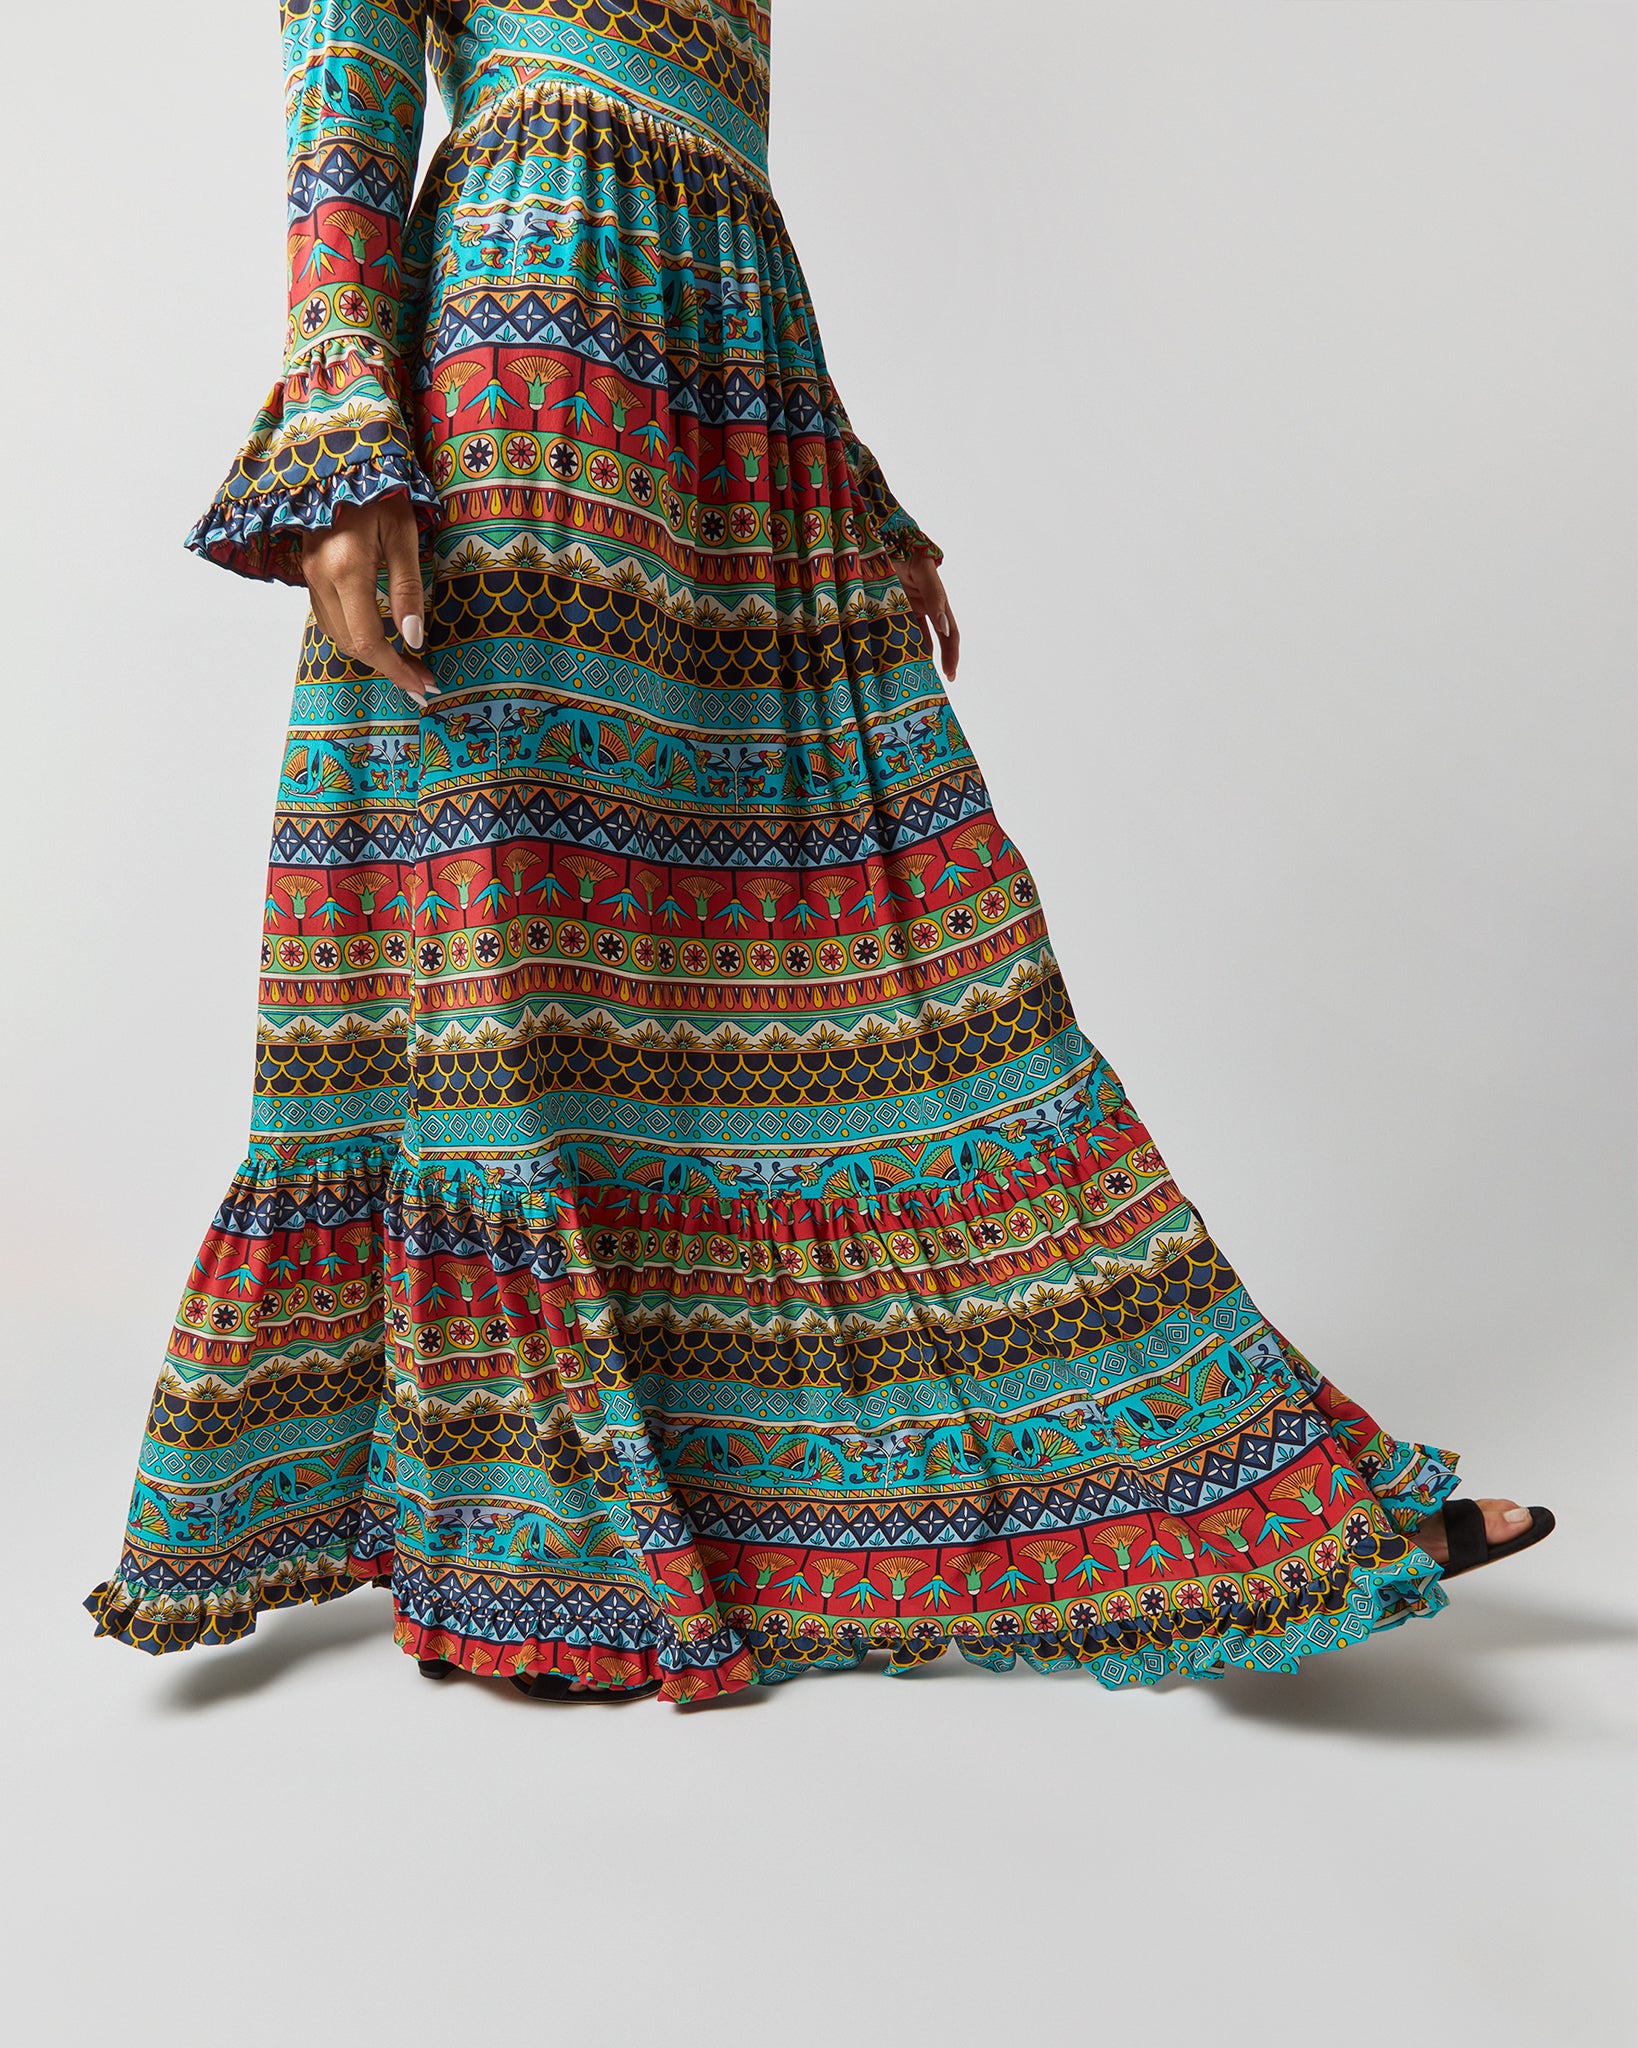 Visconti Dress in Giza Turquoise Crepe de Chine